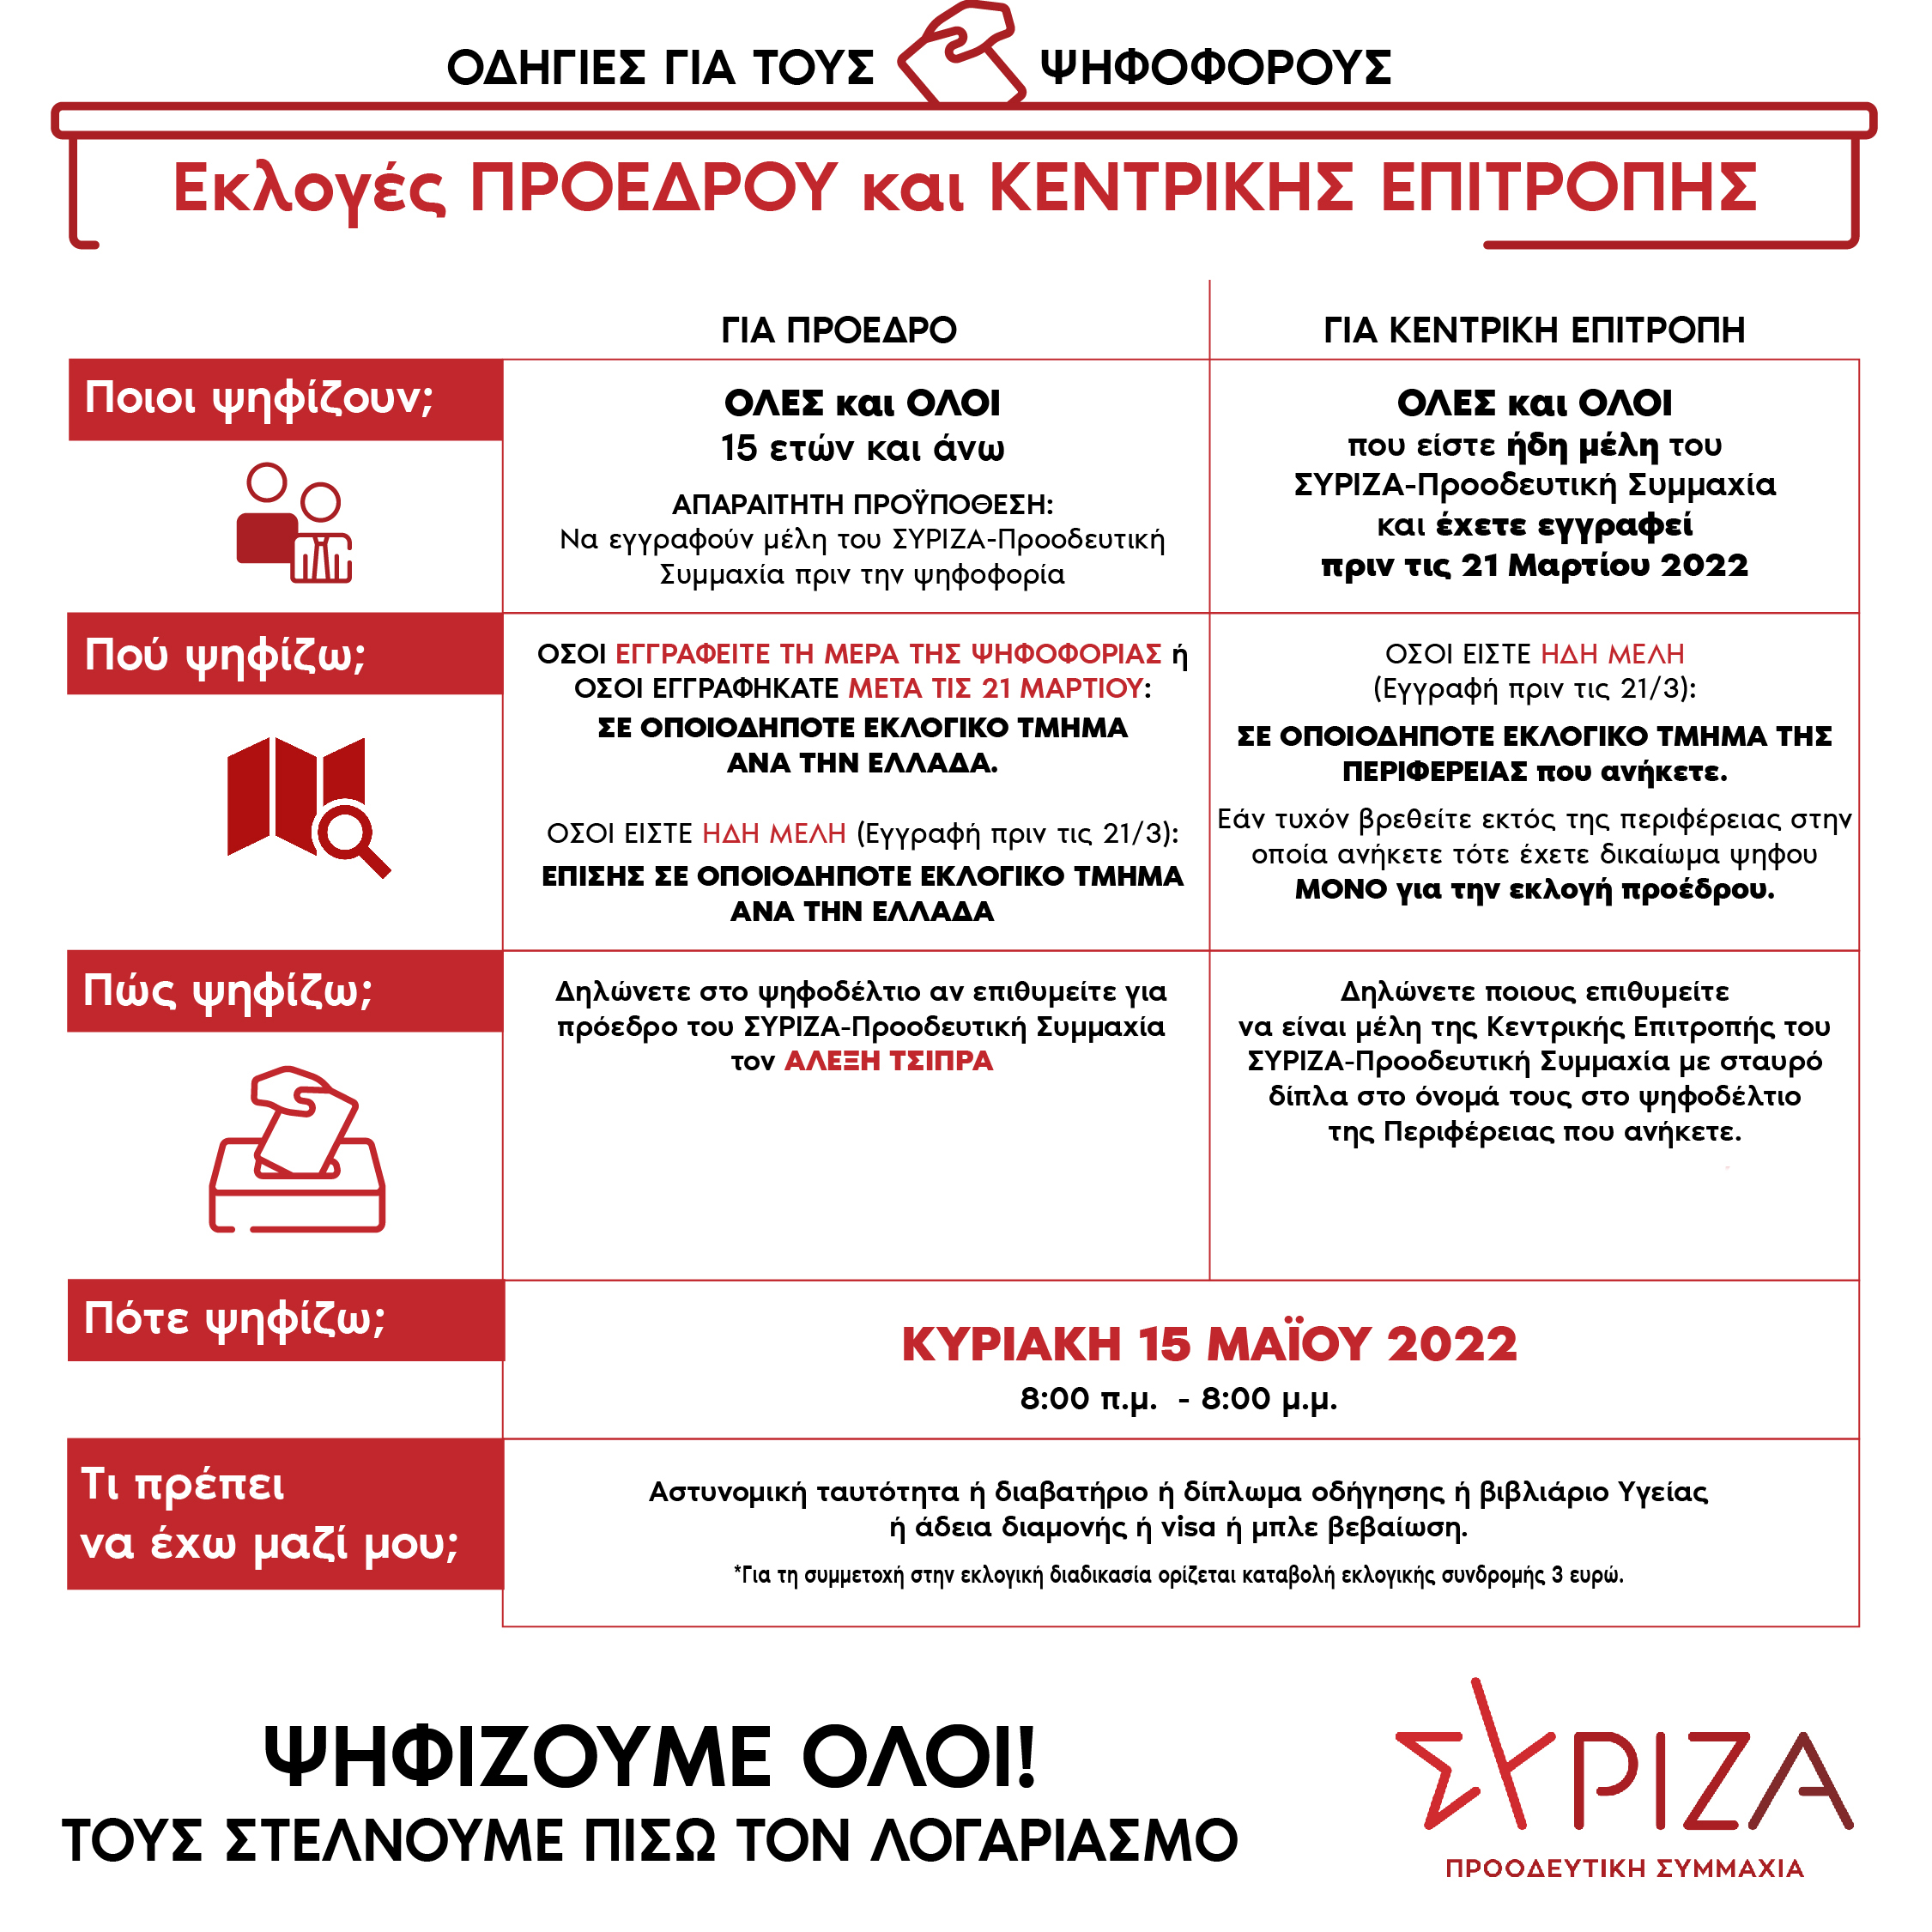 ΣΥΡΙΖΑ Μεσολογγίου: ενημέρωση για τα εκλογικά κέντρα και τη διαδικασία της 15ης Μαΐου